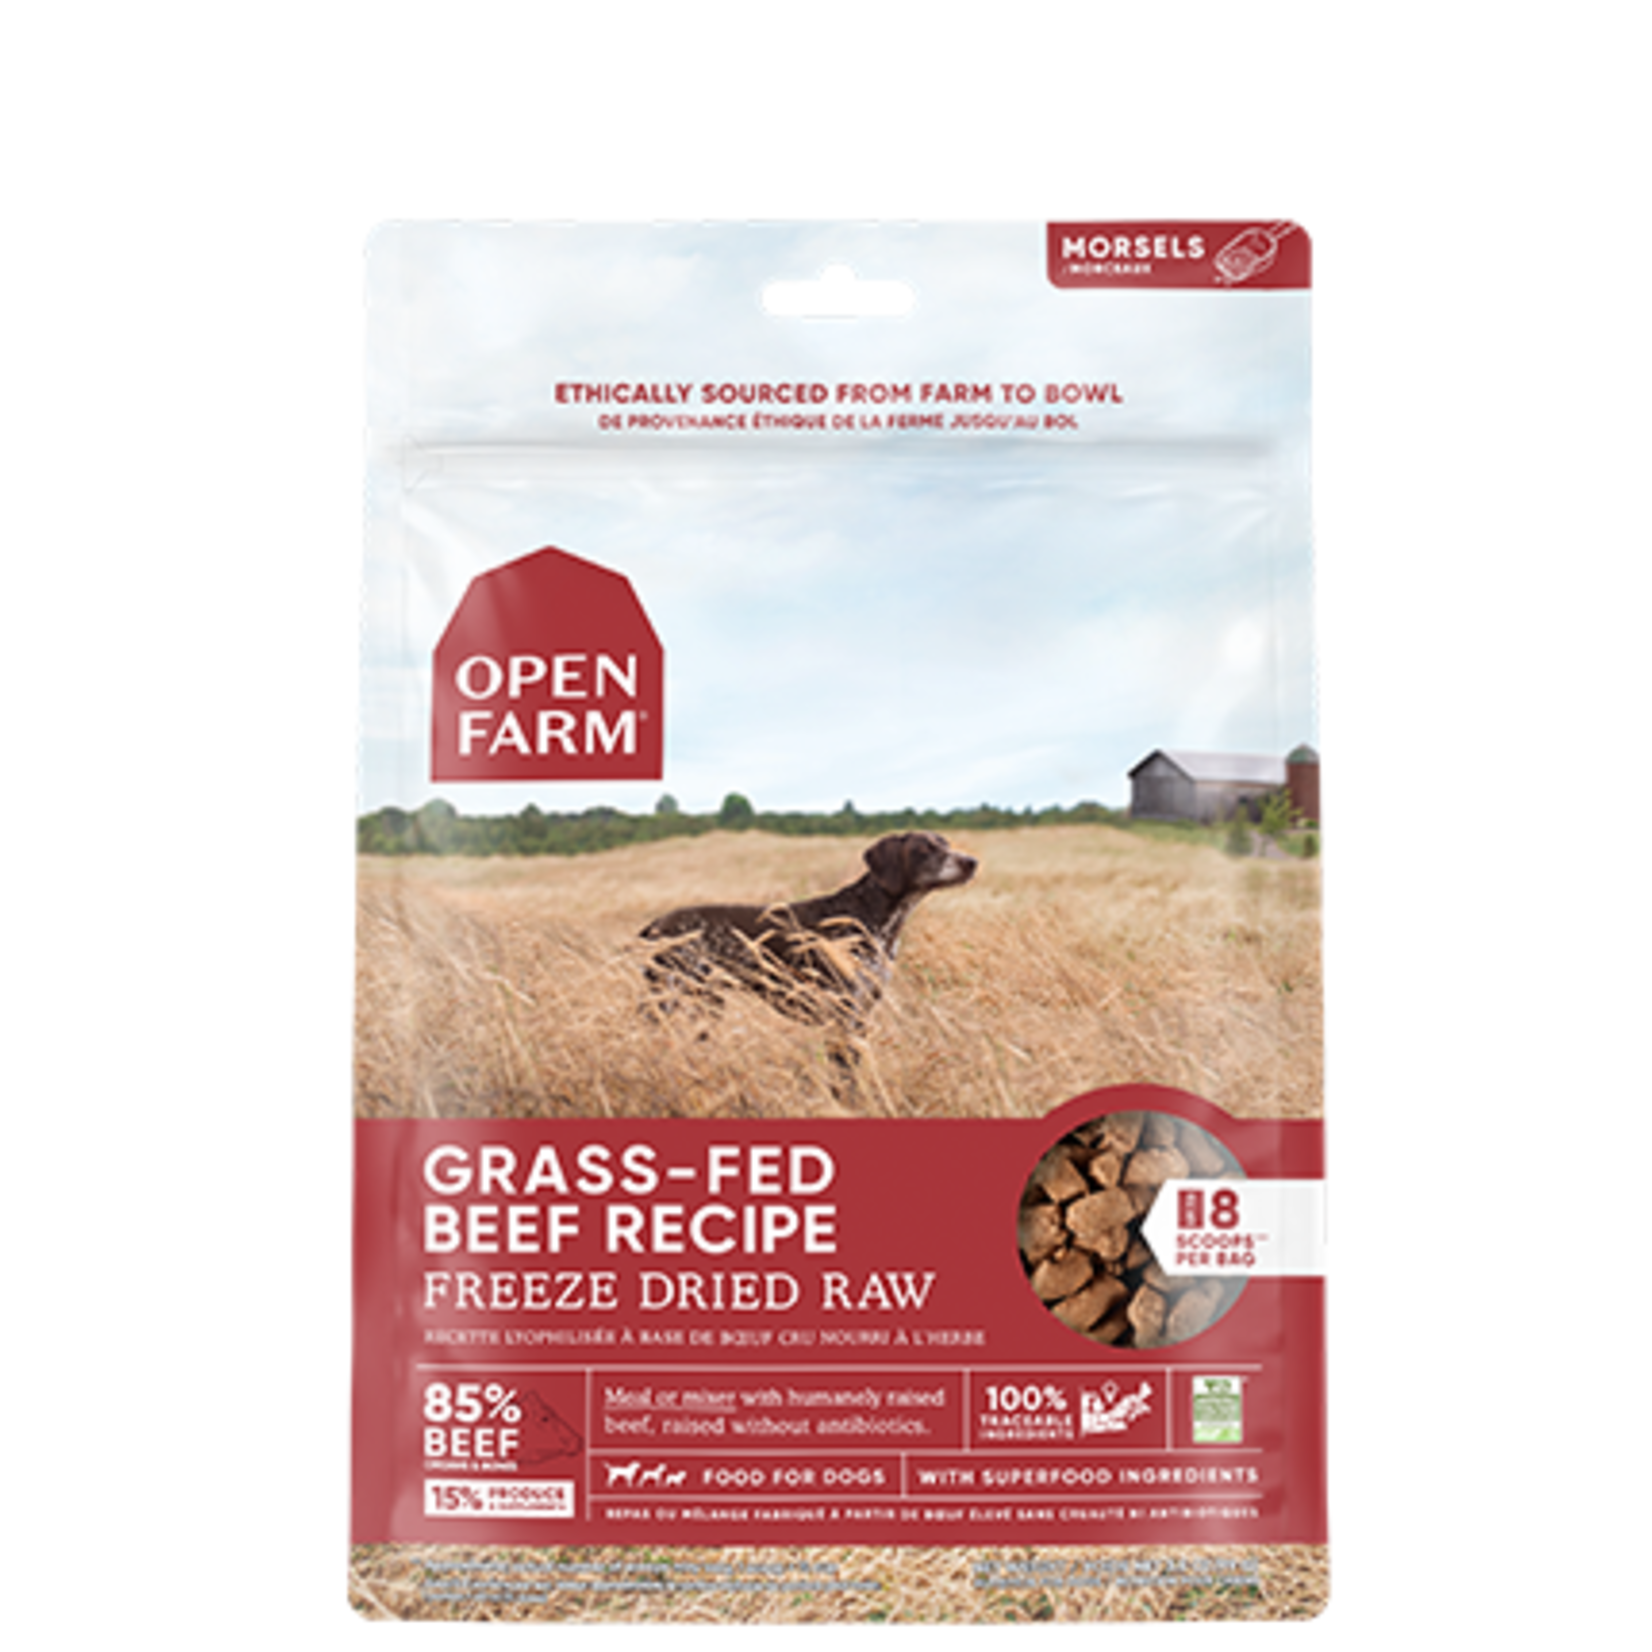 Open Farm Morceaux de Boeufs - Cru Séchés à Froid - 3.5 oz